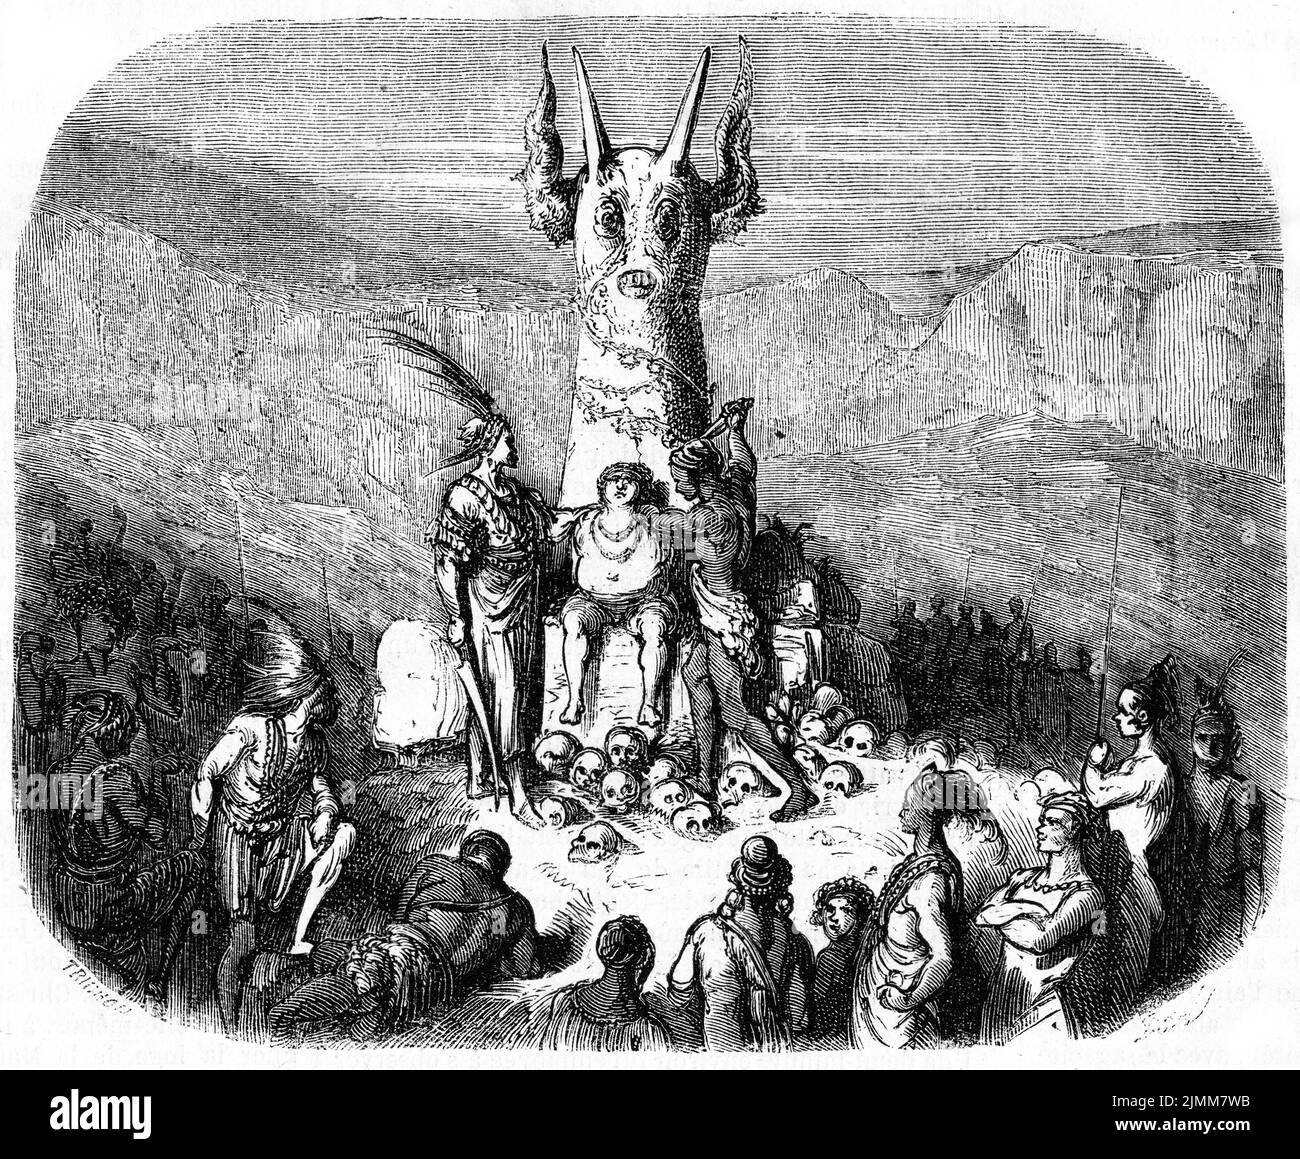 Engraving of pagans making a human sacrifice, circa 1850 Stock Photo